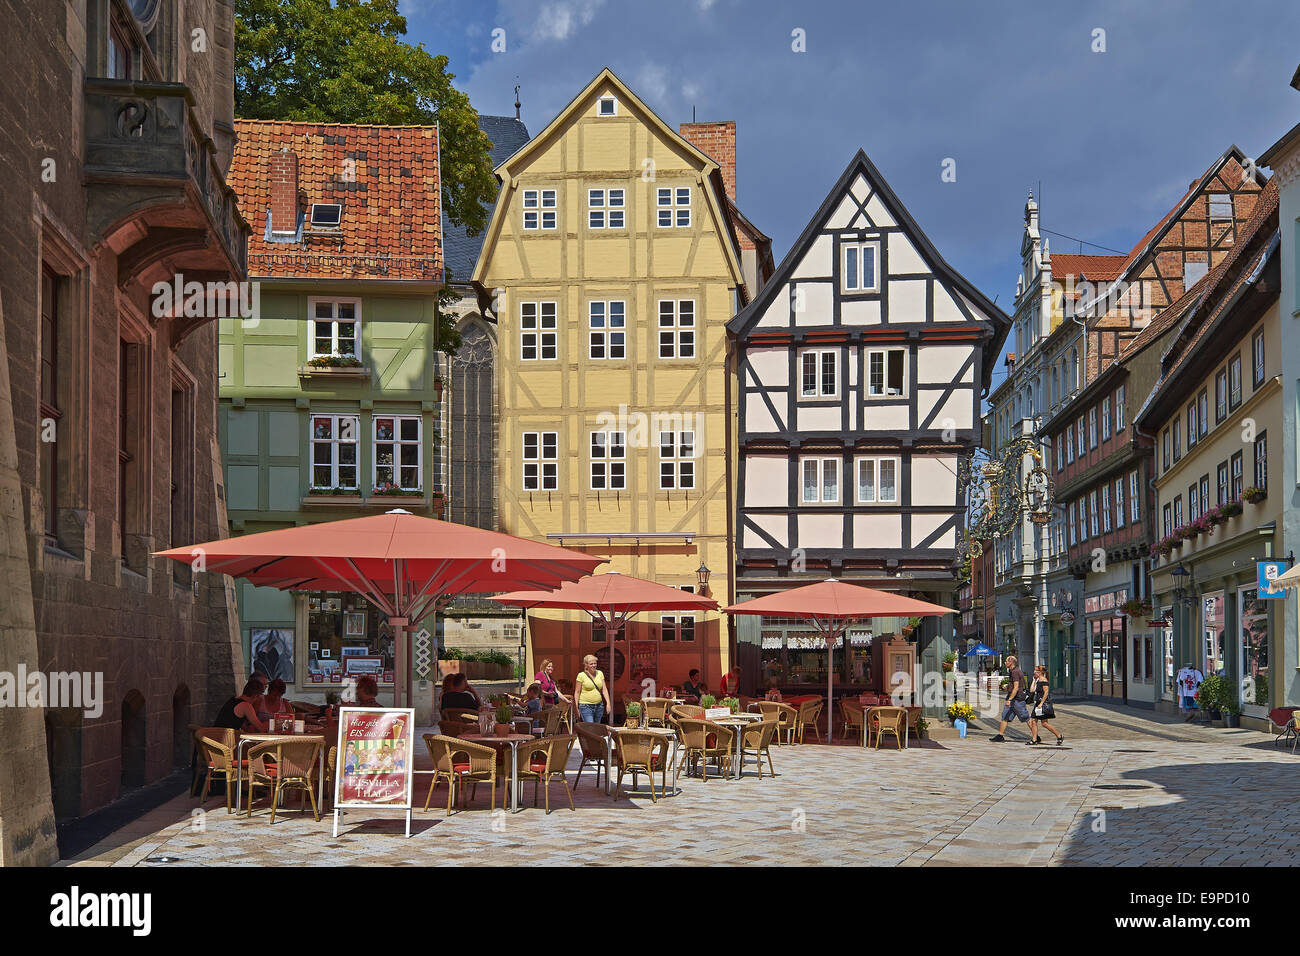 Café in Quedlinburg, Germany Stock Photo